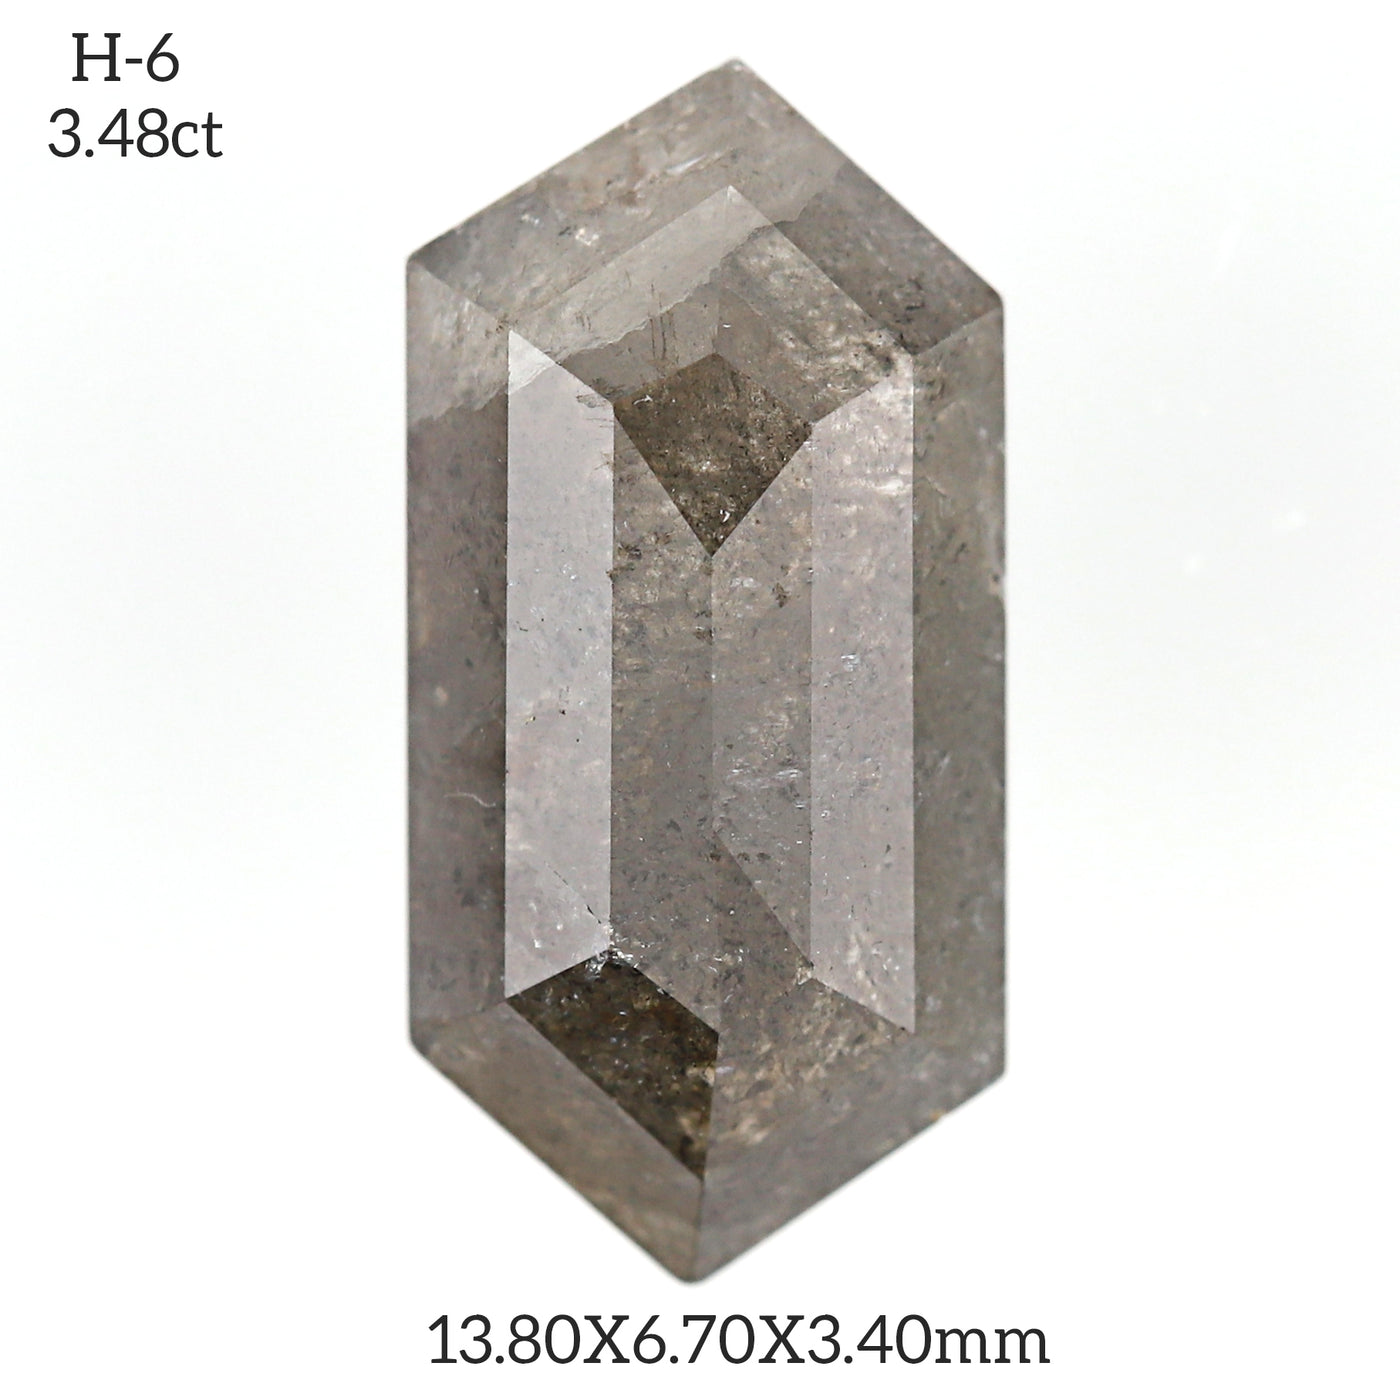 H6 - Salt and pepper hexagon diamond